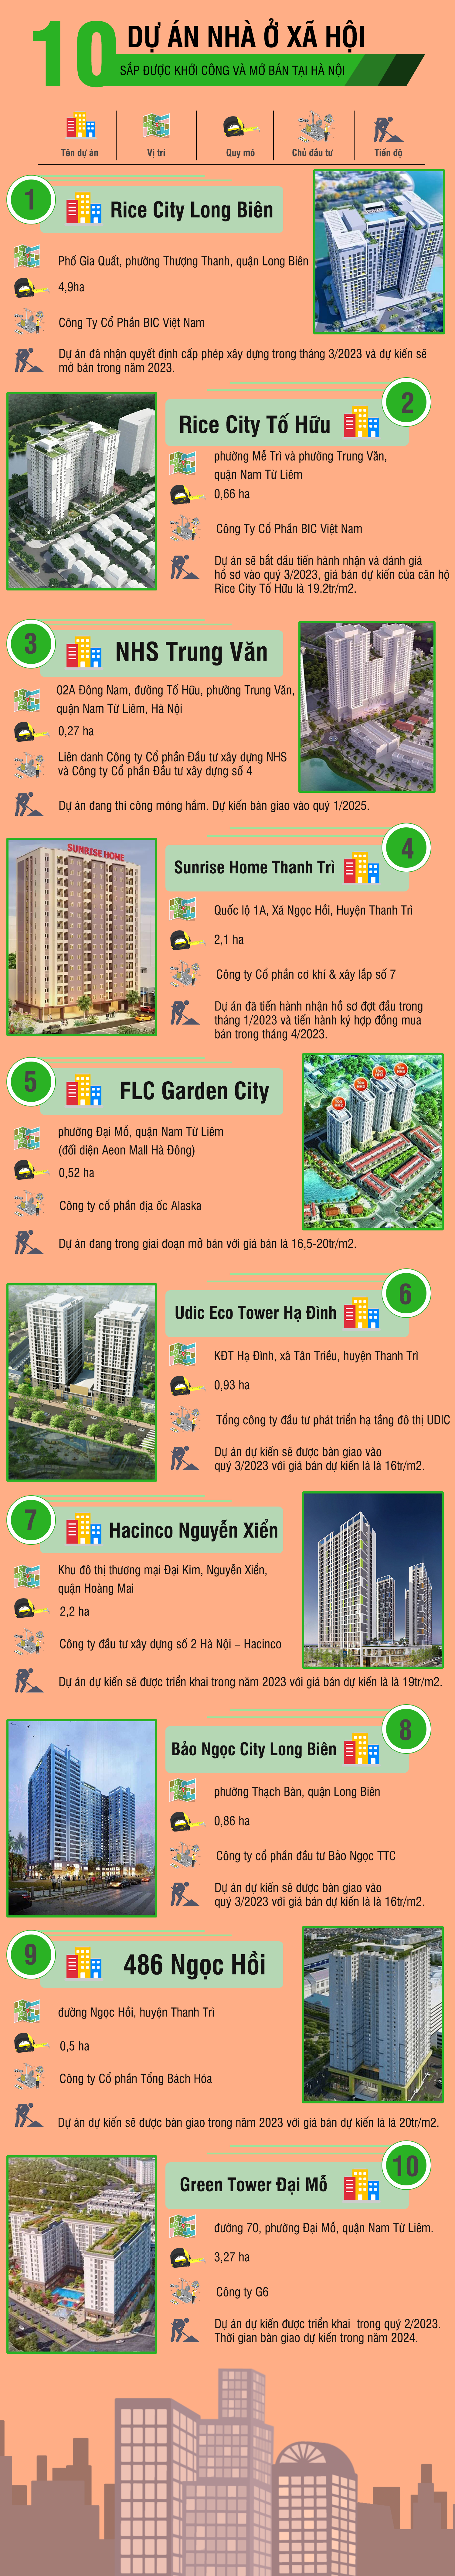 [Infographic] 10 dự án nhà ở xã hội sắp được khởi công và mở bán tại Hà Nội - Ảnh 1